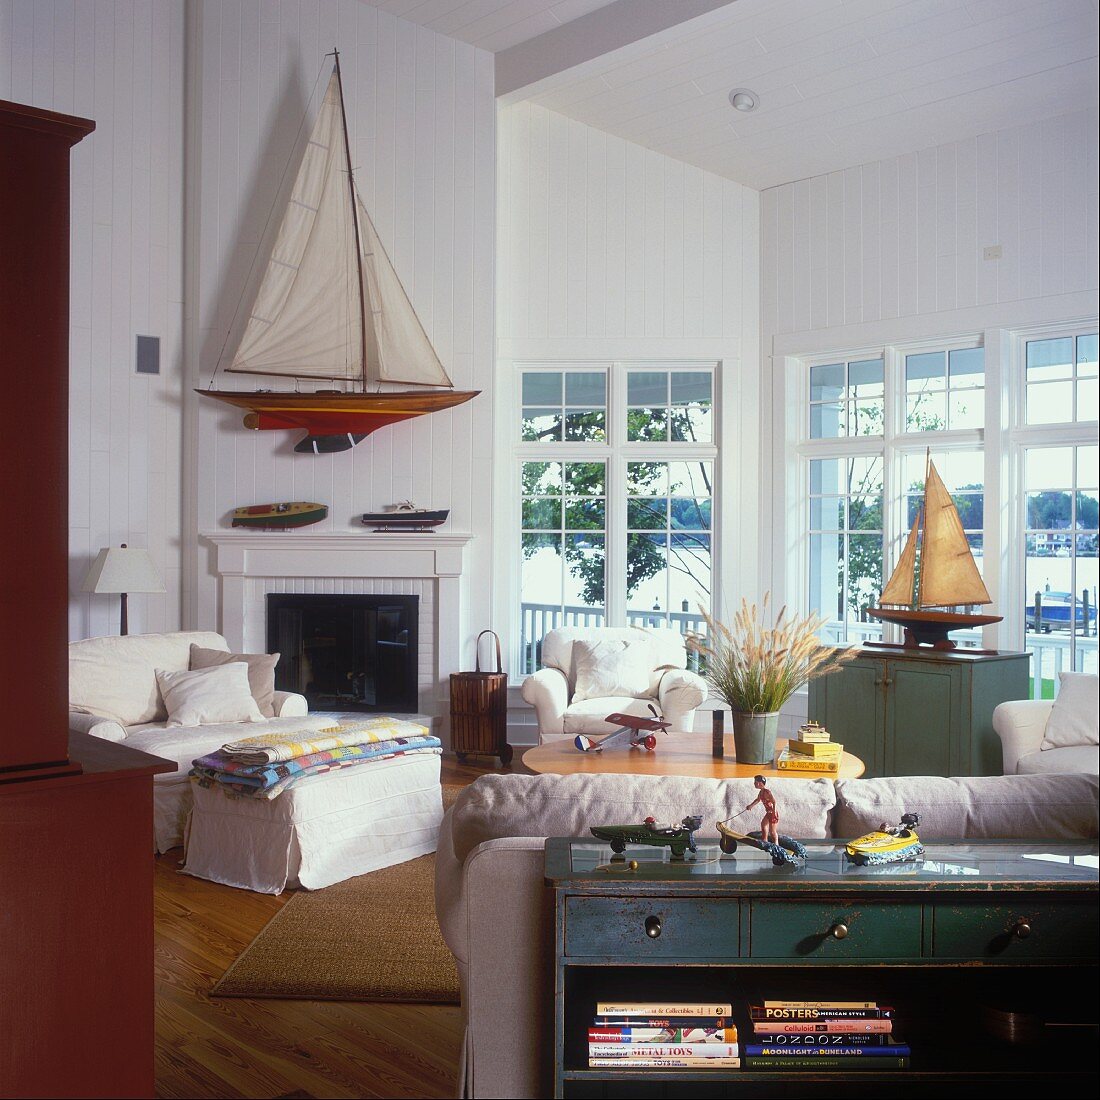 Wohnzimmer mit breiter Fensterfront und einem großen Modell-Segelboot über dem offenen Kamin